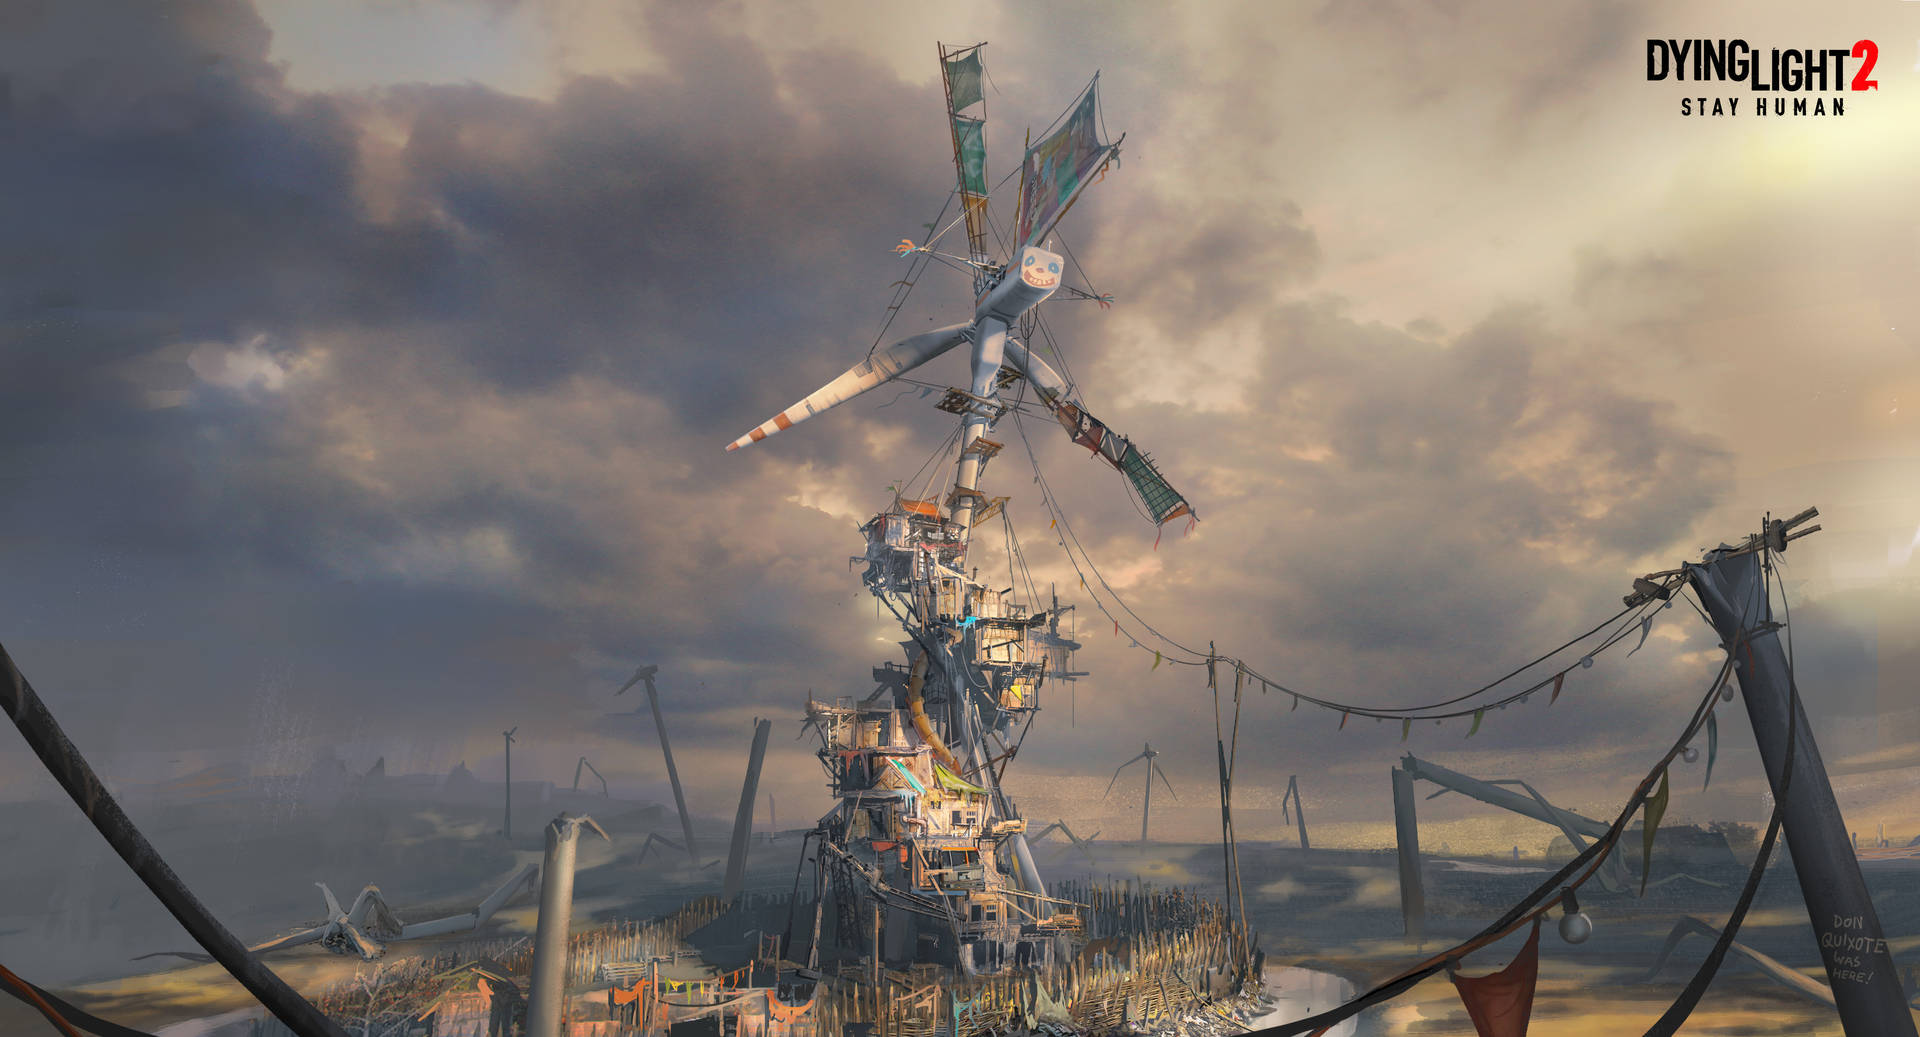 Majestic Windmill Scene in Dying Light 2 Wallpaper